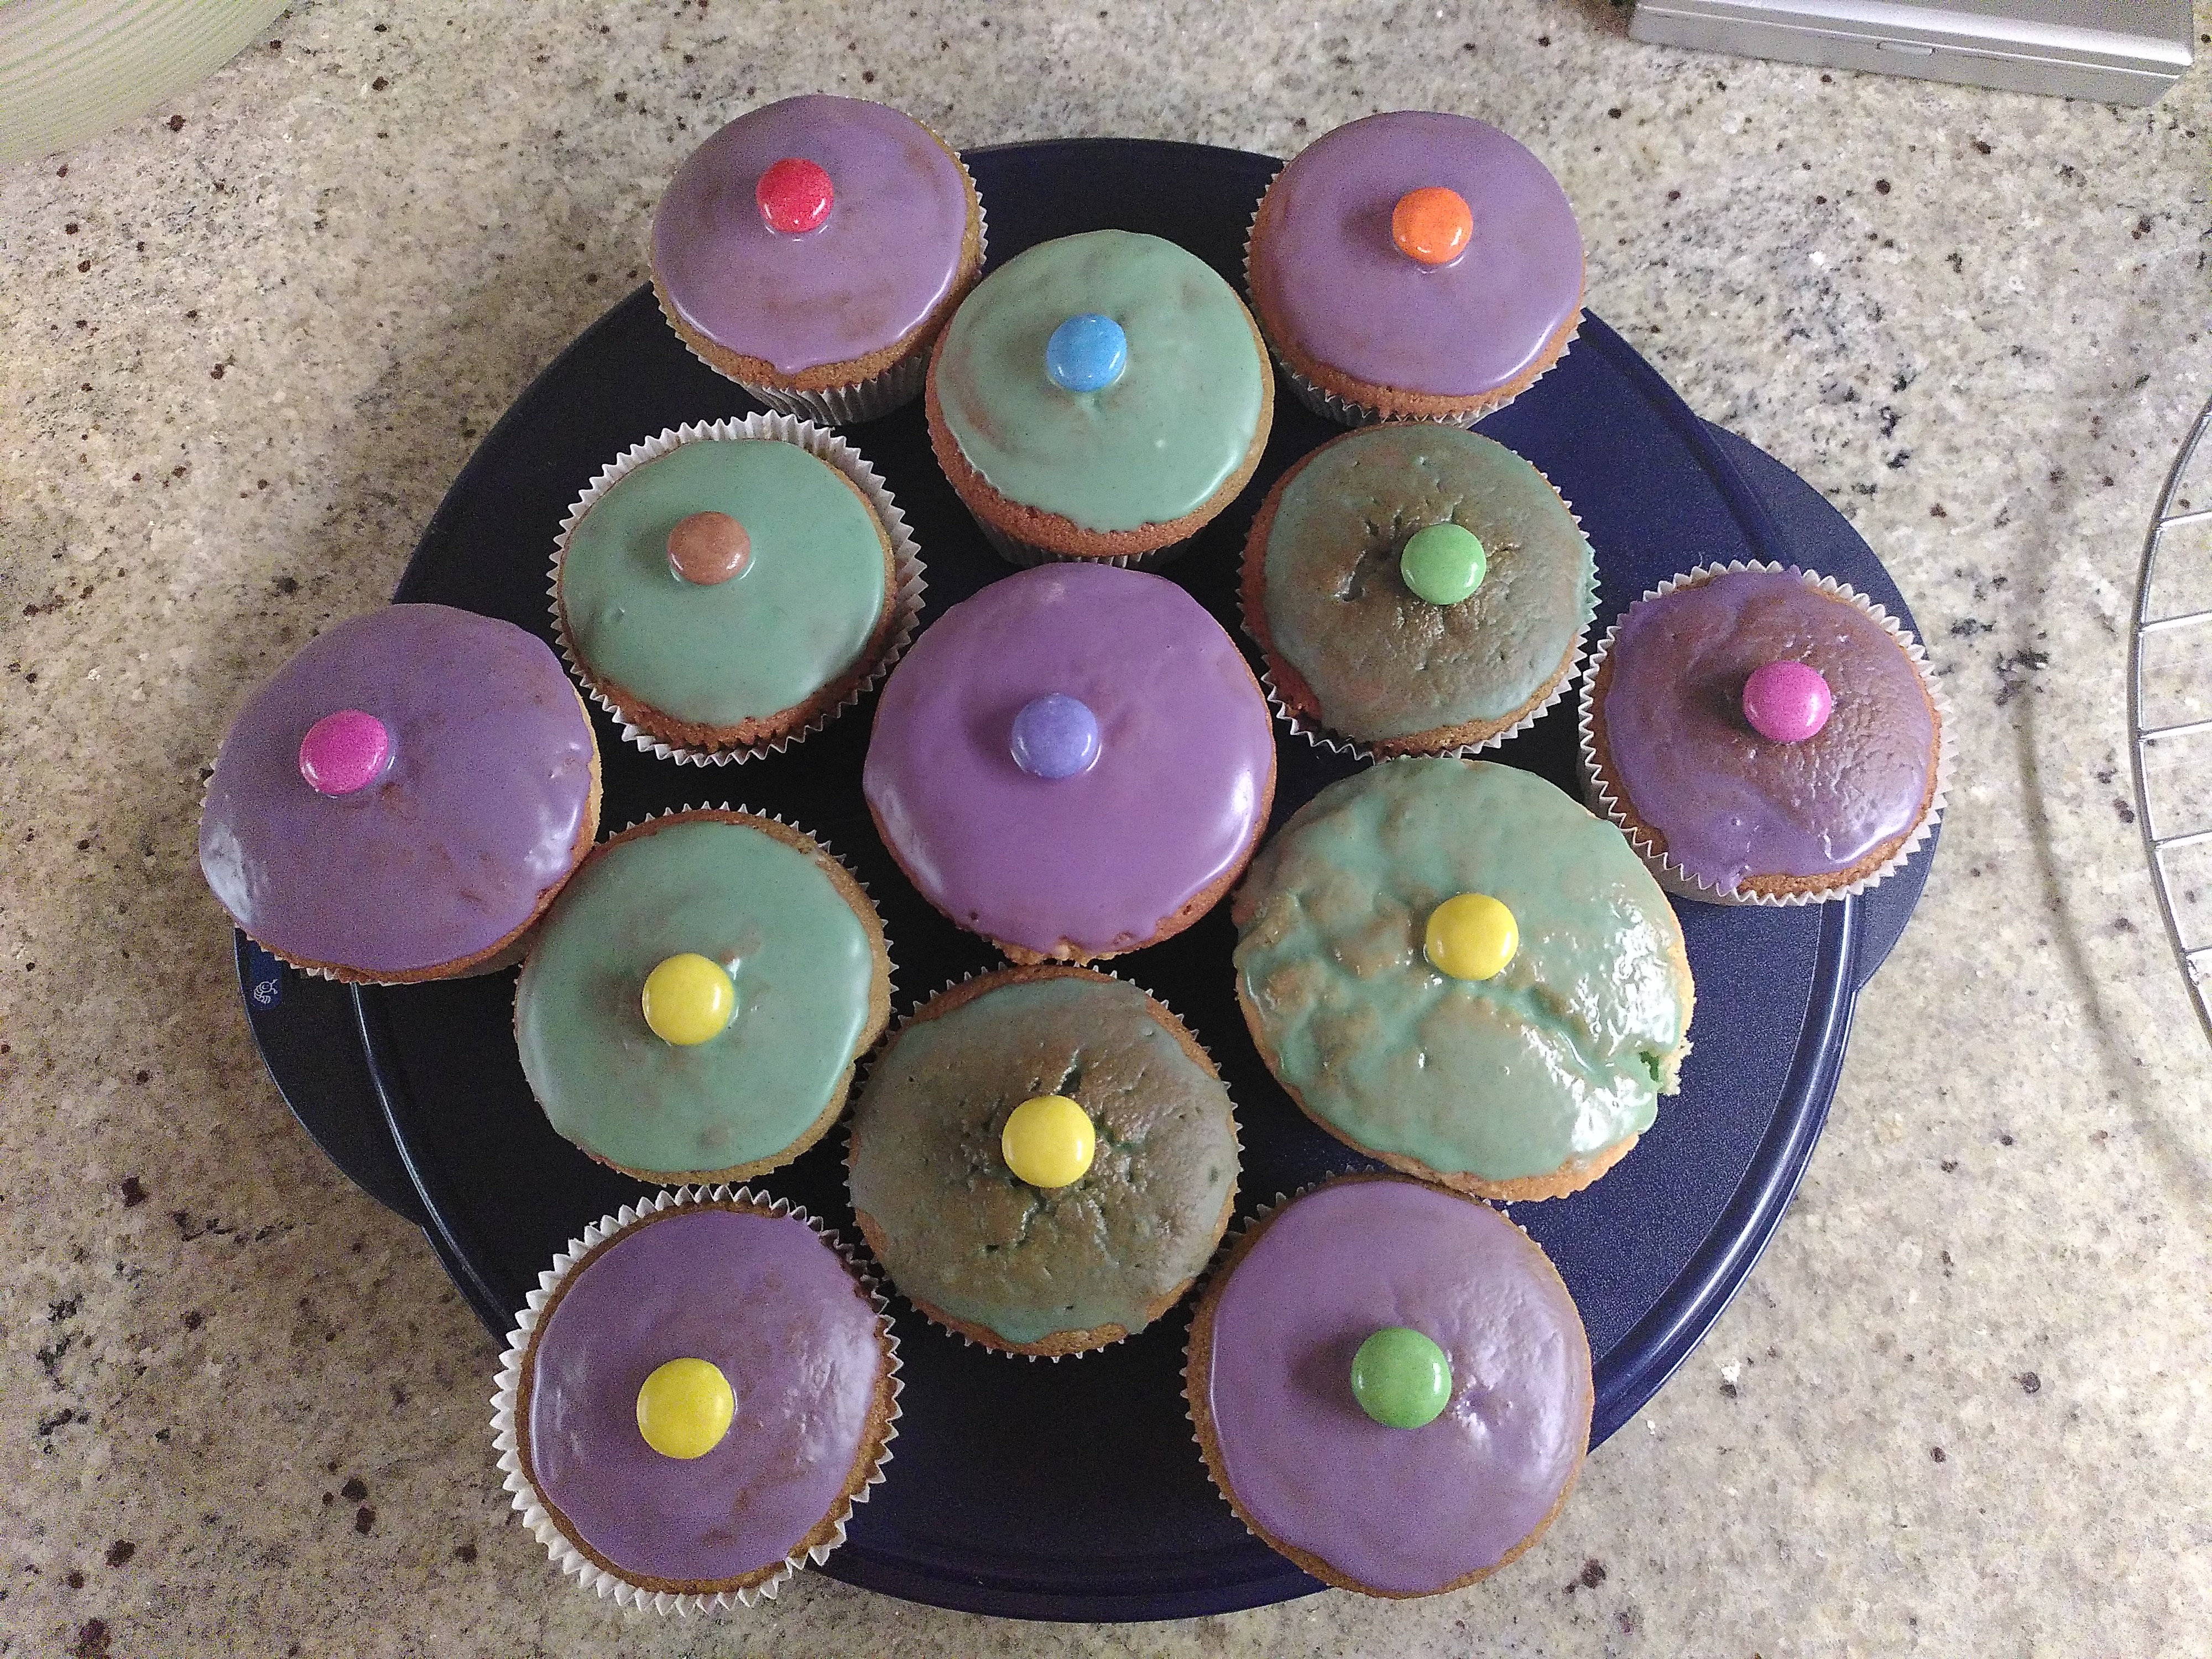 Von oben fotografiert: 12 Muffins mit lila und grünem Zuckerguss uns jeweils einem bunten Smartie in der Mitte, stehen auf einer blauen Kuchenform aus Plastik.